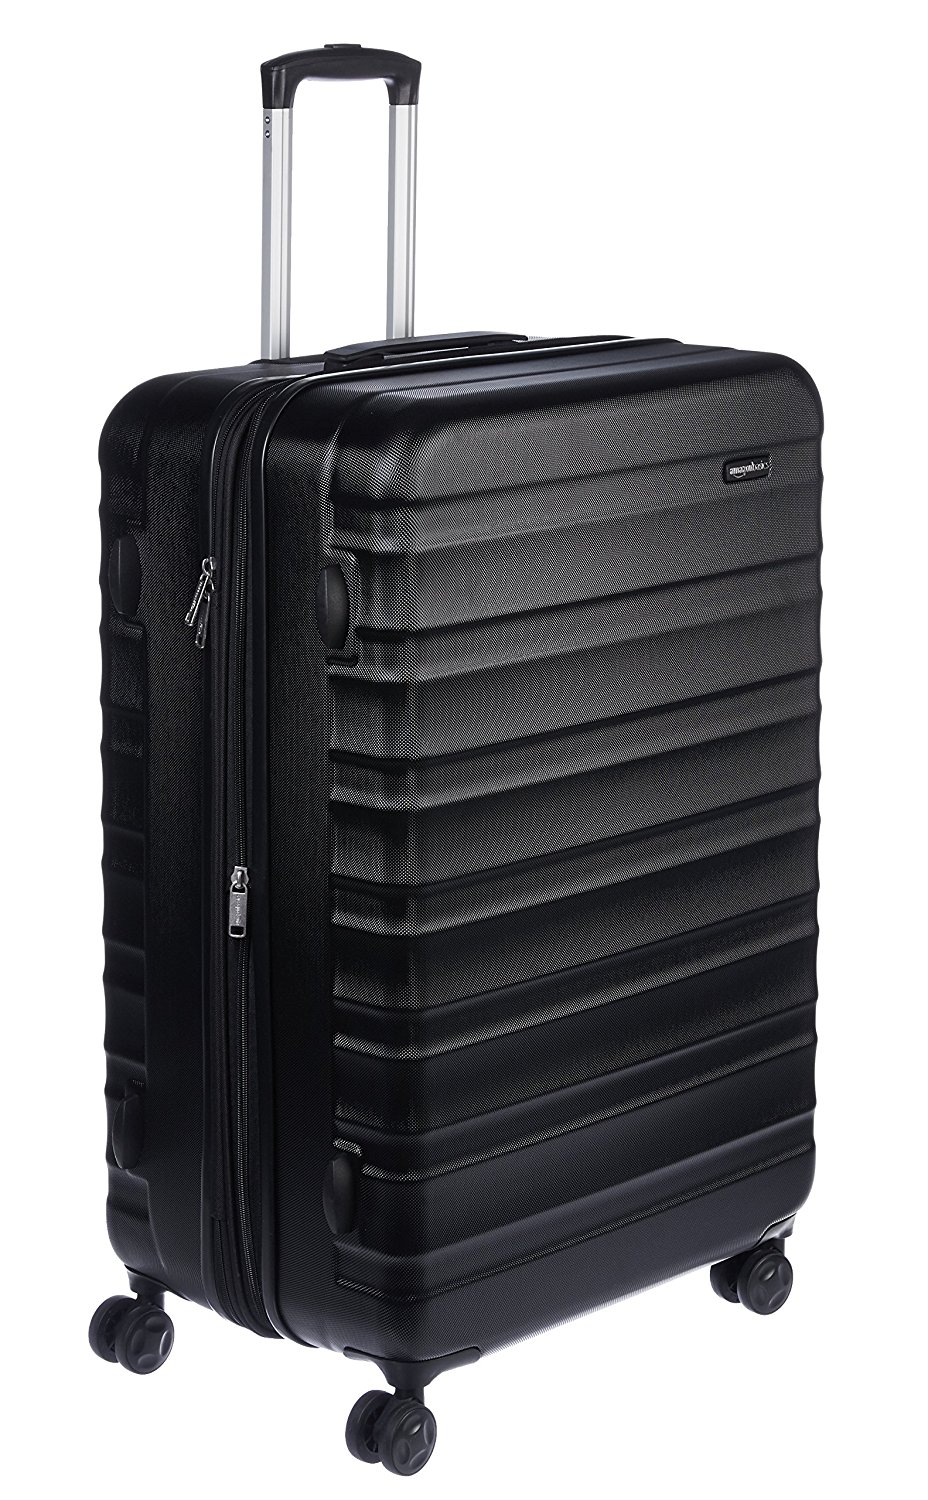 Amazon basics luggage.jpg